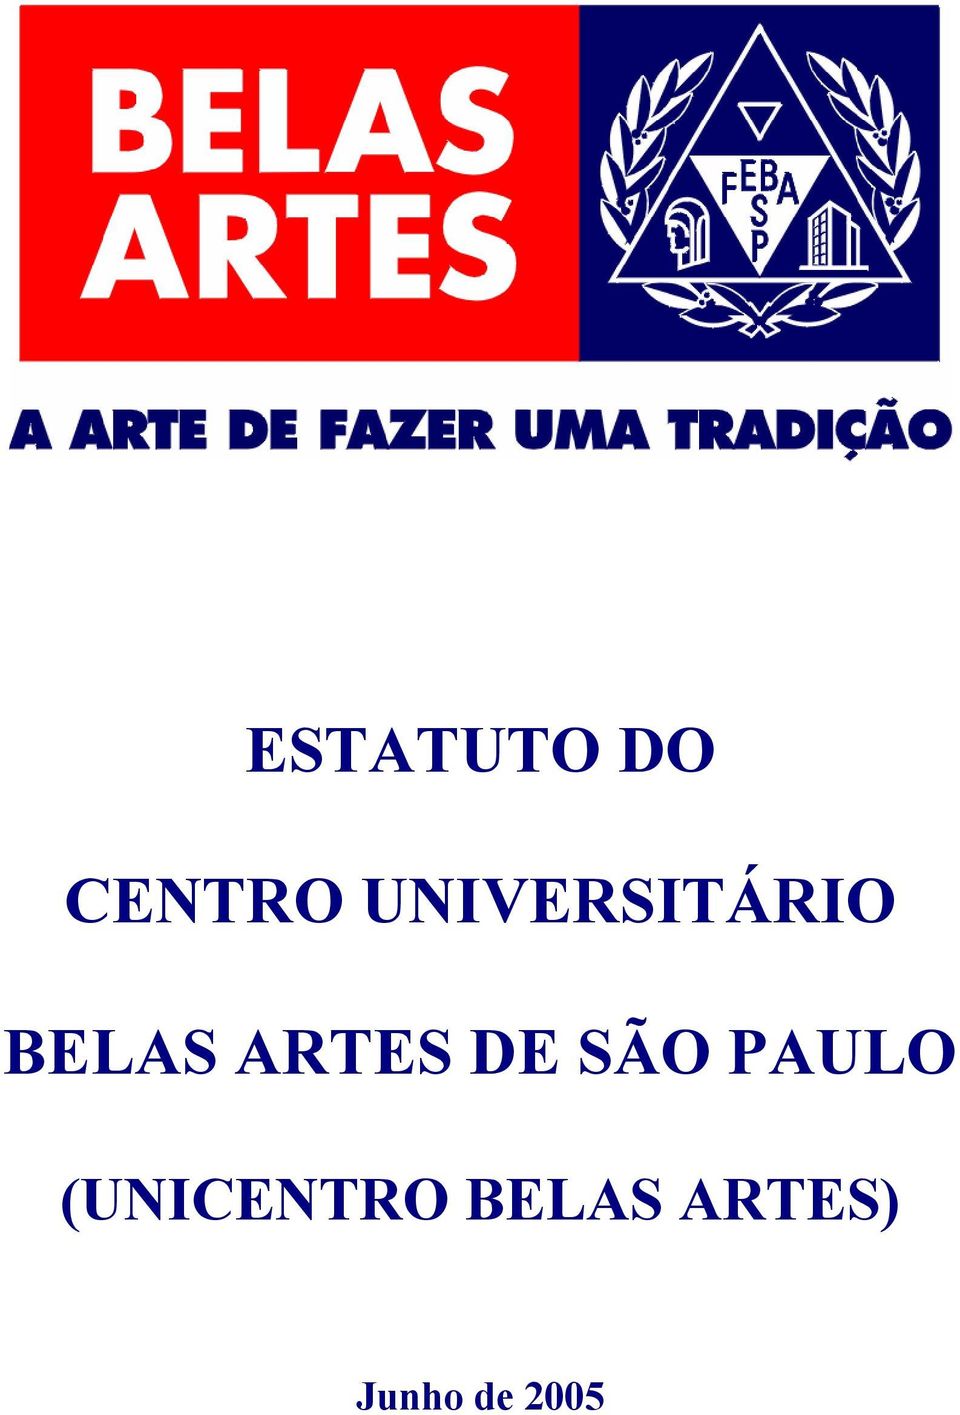 ARTES DE SÃO PAULO